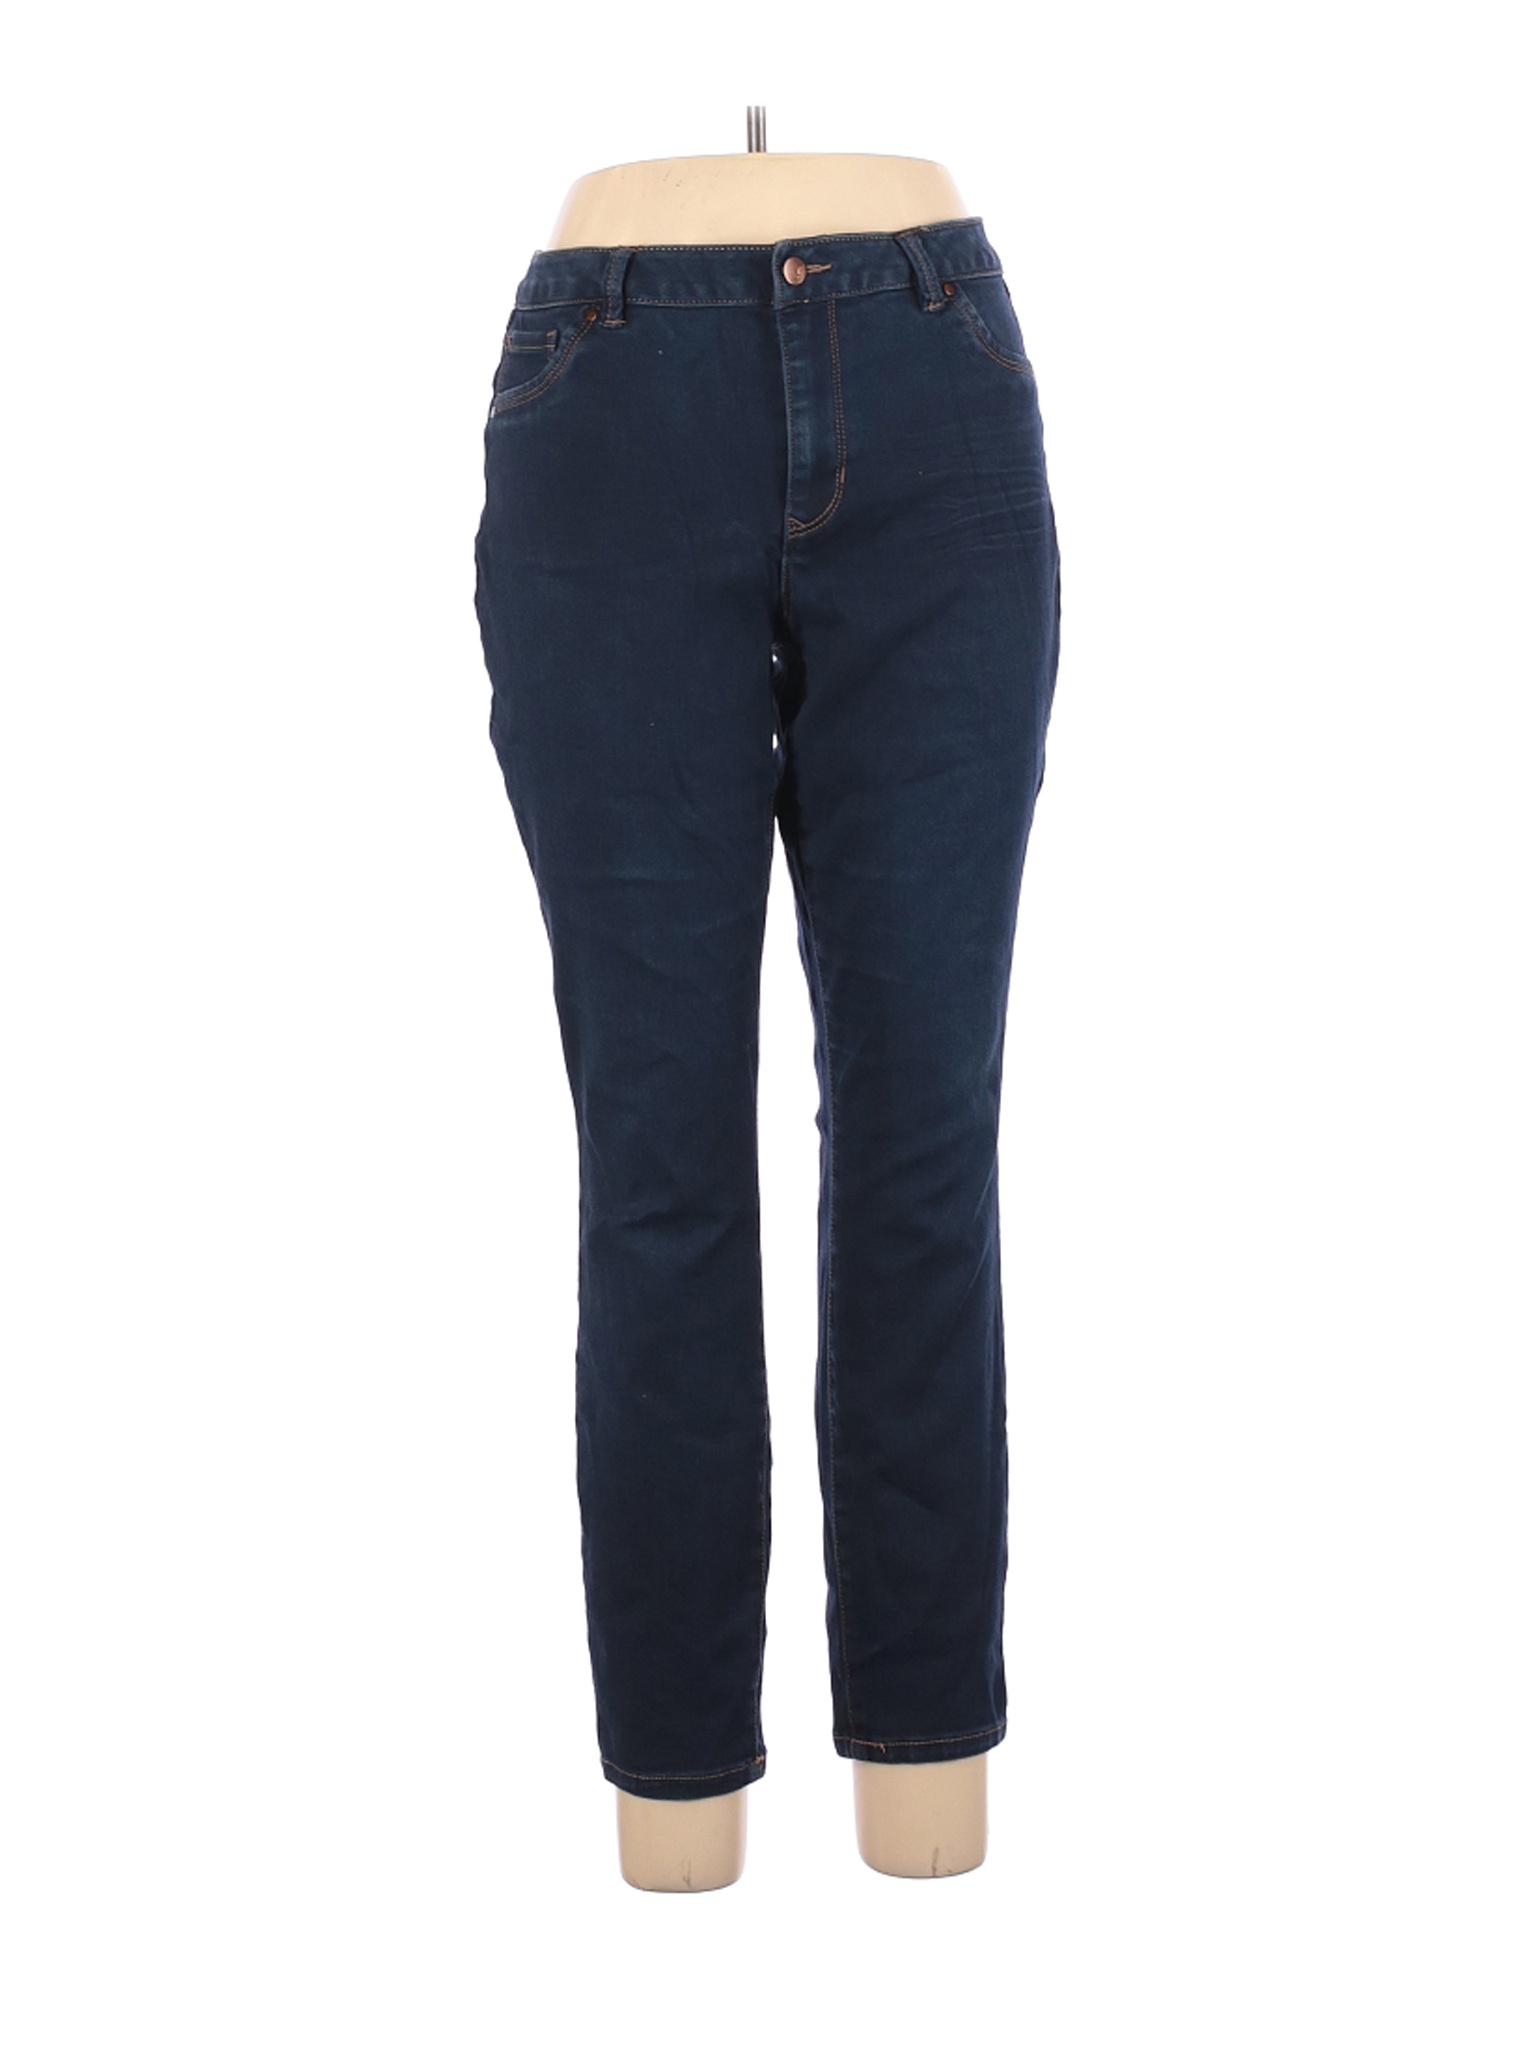 D. jeans Women Blue Jeans 16 | eBay